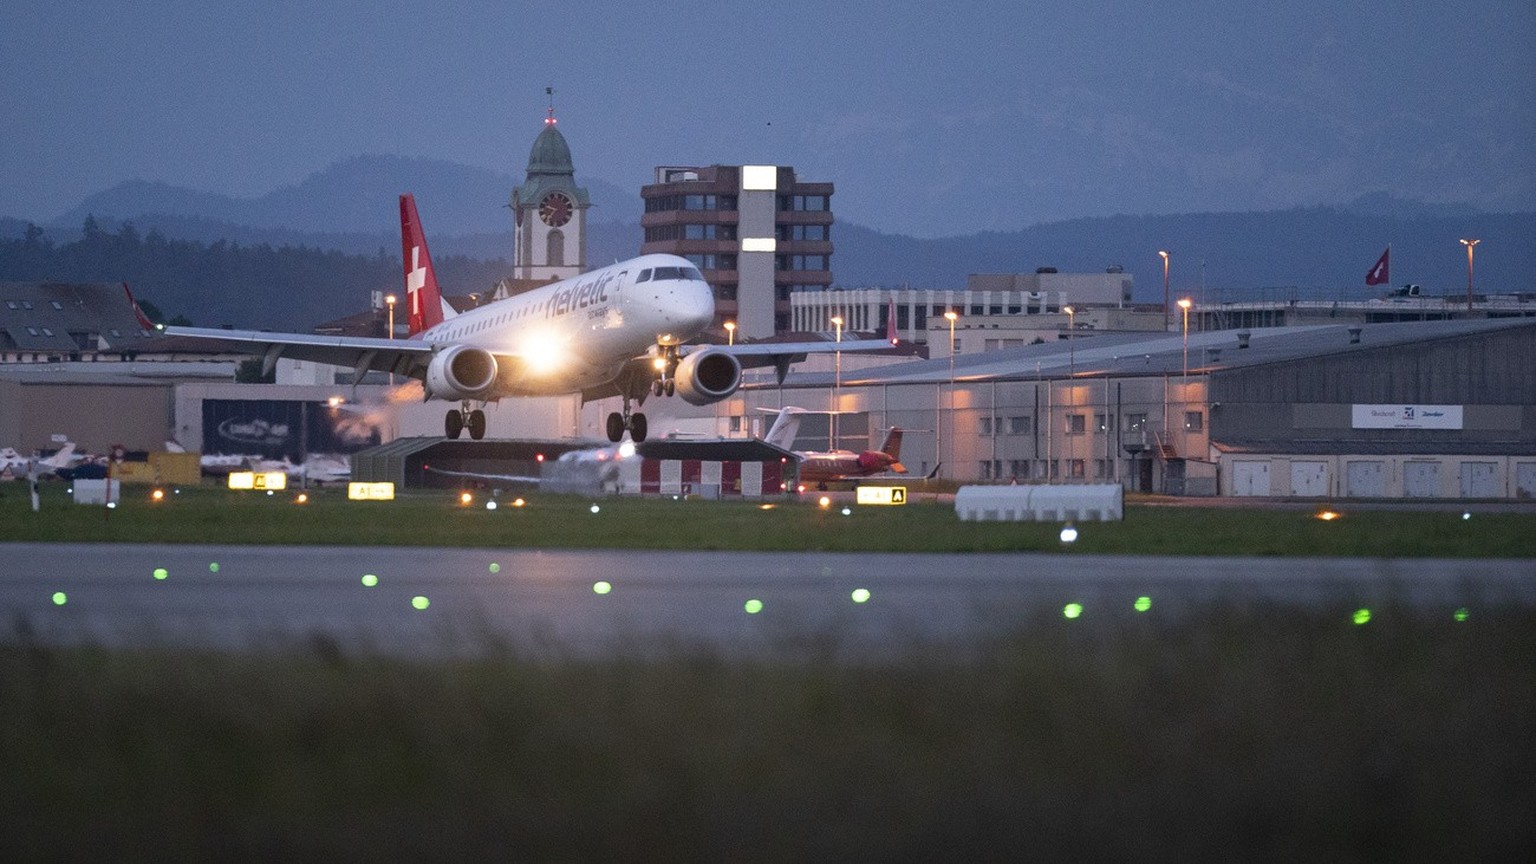 An Embraer 190 aircraft from Helvetic Airways at Zurich Airport in Kloten, Switzerland, photographed on 5 June 2019. (KEYSTONE/Gaetan Bally)

Ein Flugzeug des Typs Embraer 190 von Helvetic Airways am  ...